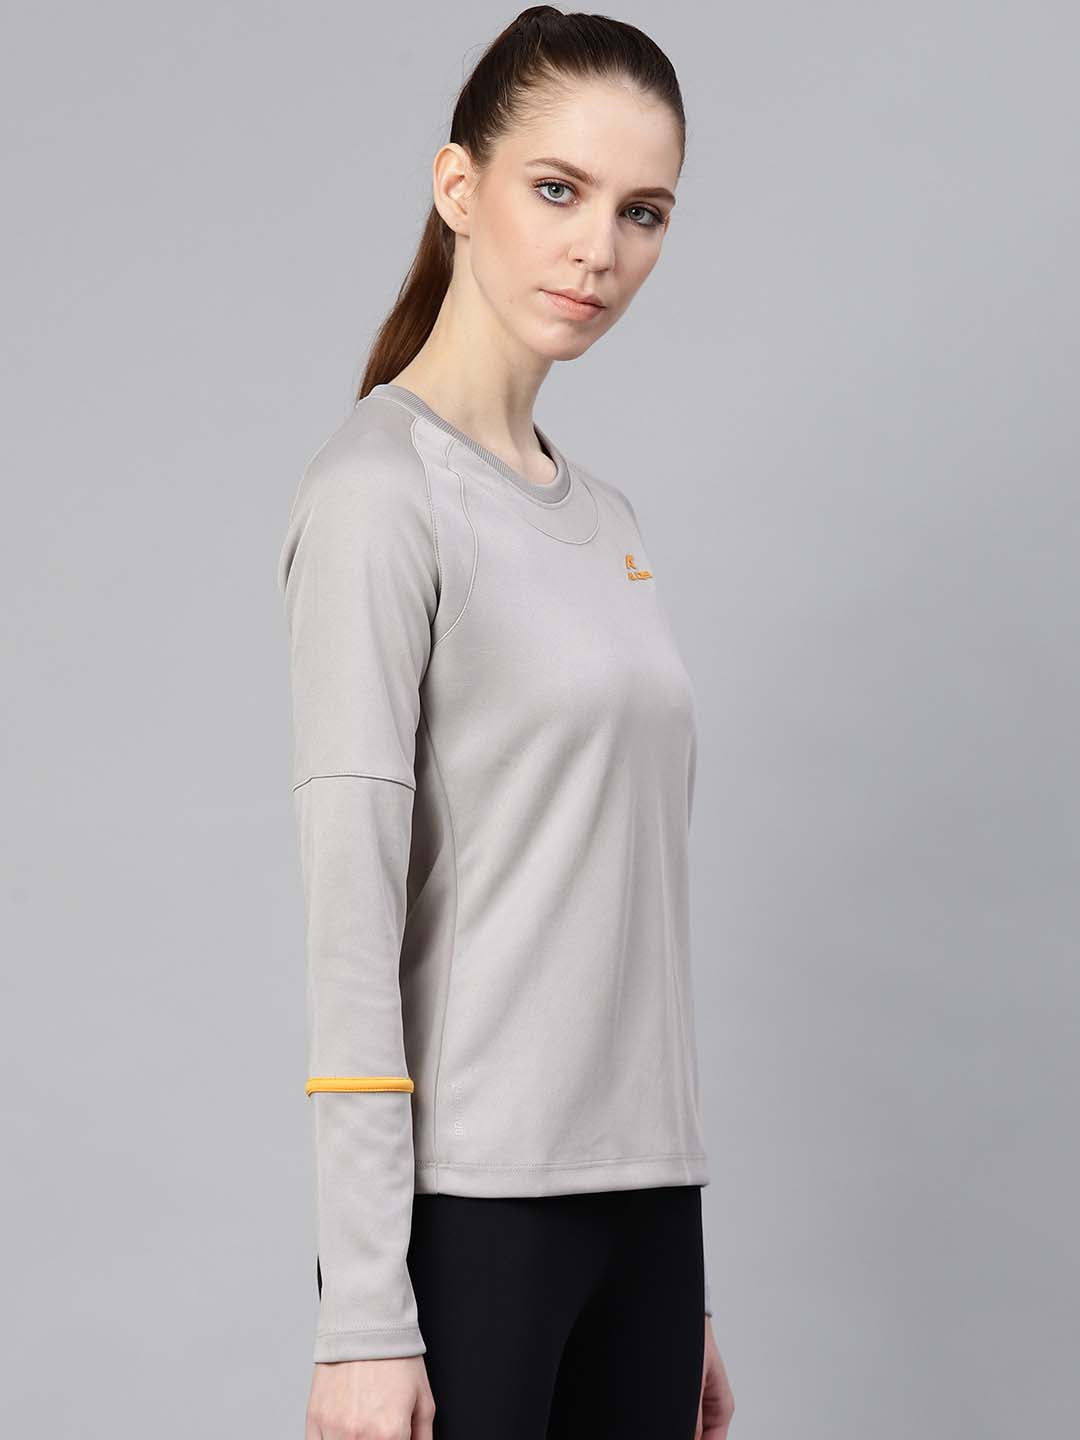 Alcis Women Grey Solid Round Neck Tennis T-shirt